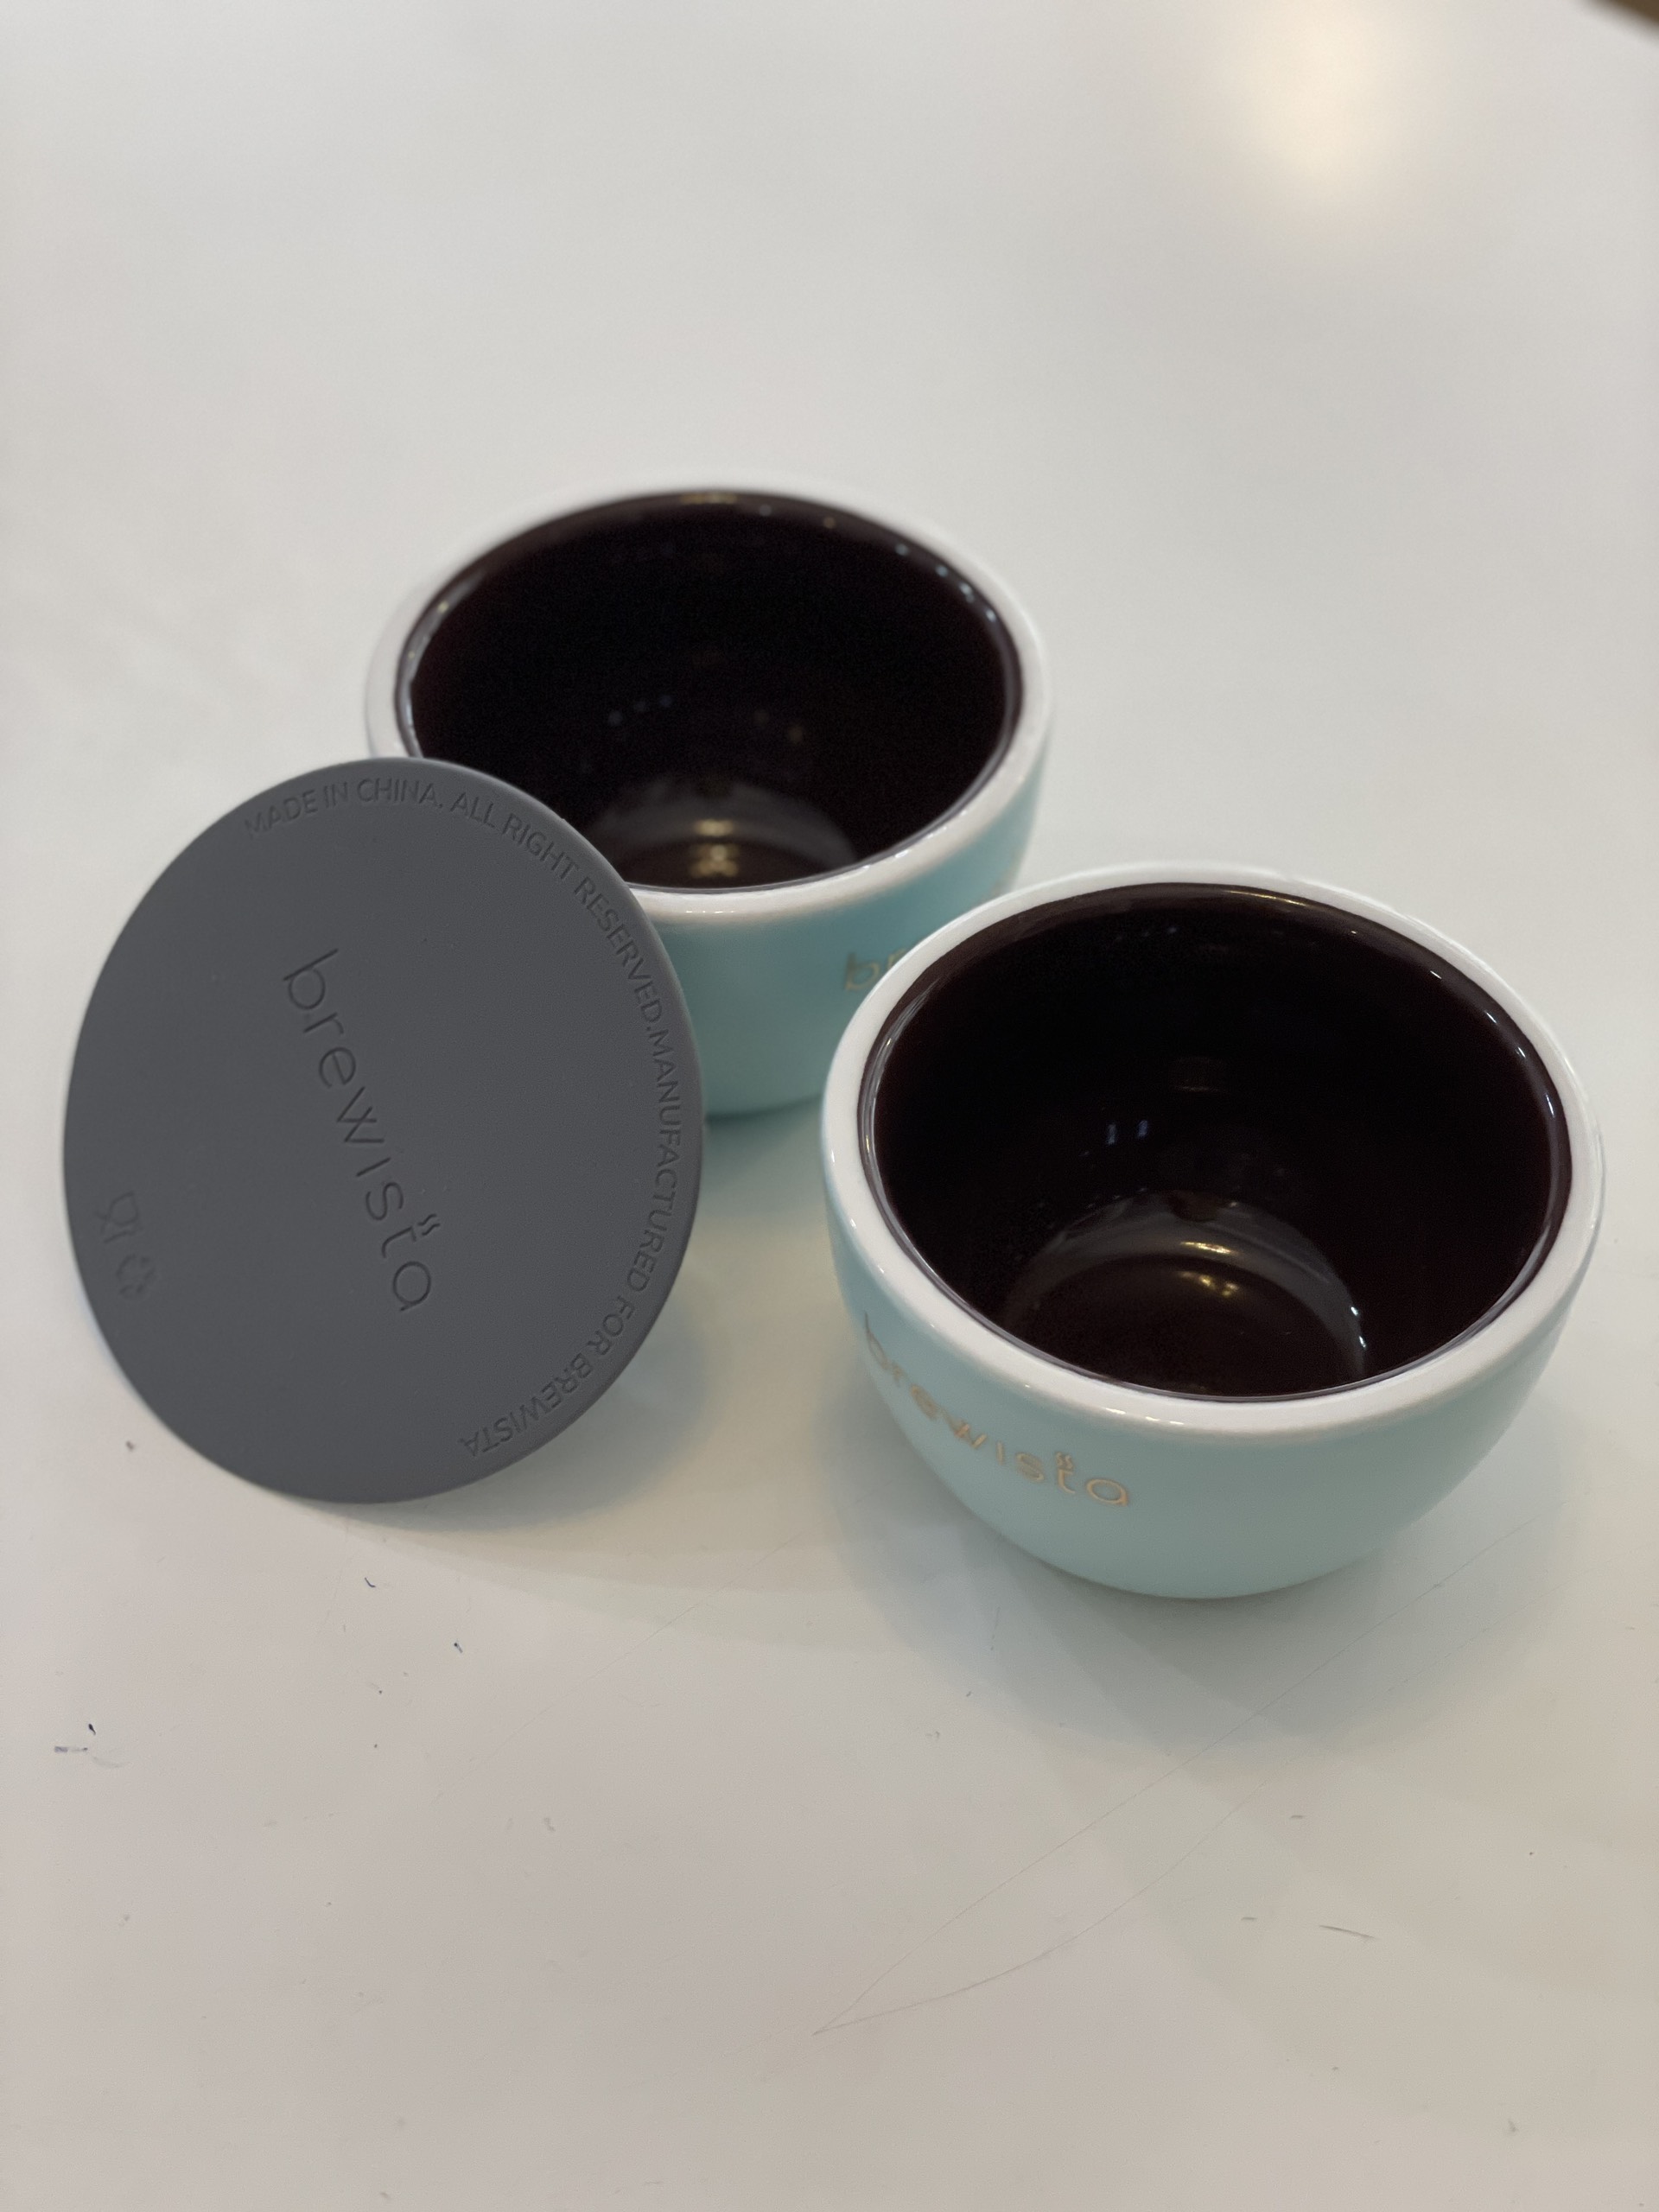 Chén cupping chuyên dụng bằng sứ thử cafe Artisan 230ml Professional Cupping Bowl + silicon lid - Chính hãng Brewista